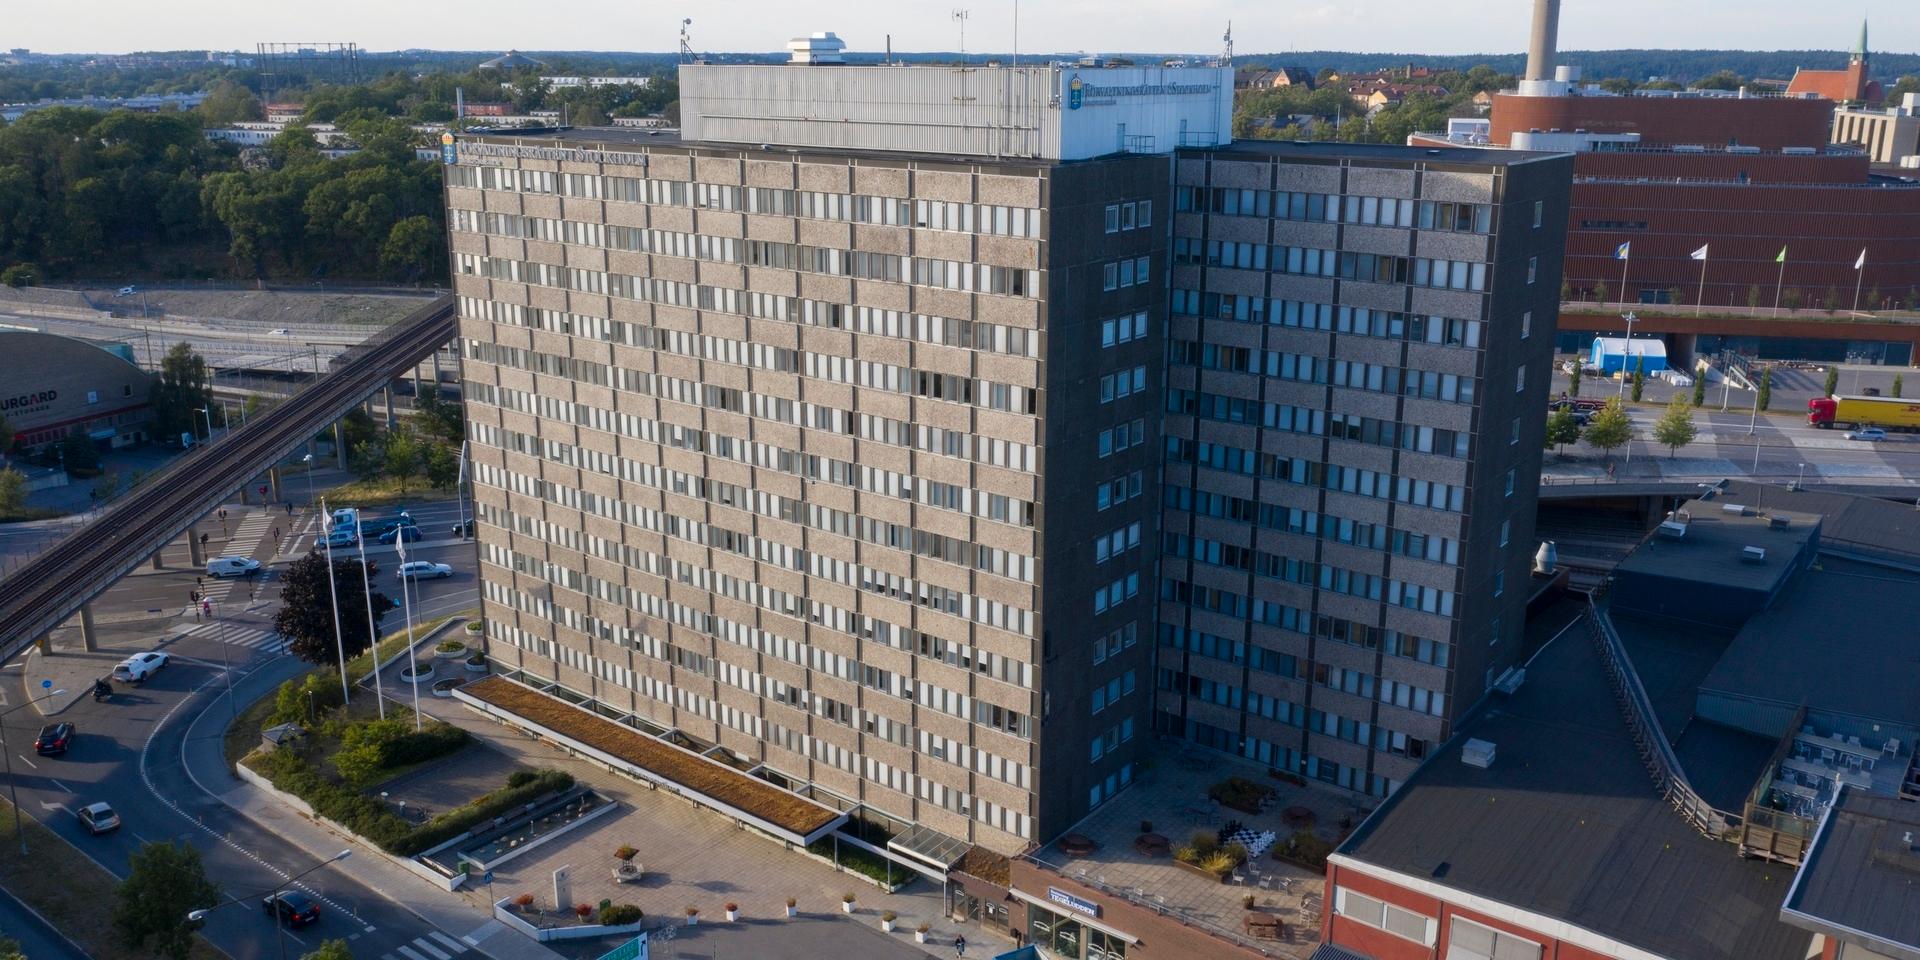 Förvaltningsrättens lokaler nära Värtahamnen i Stockholm, där en av landets fyra migrationsdomstolar finns. De övriga är placerade vid respektive förvaltningsrätt i Malmö, Luleå och Göteborg. Arkivbild.